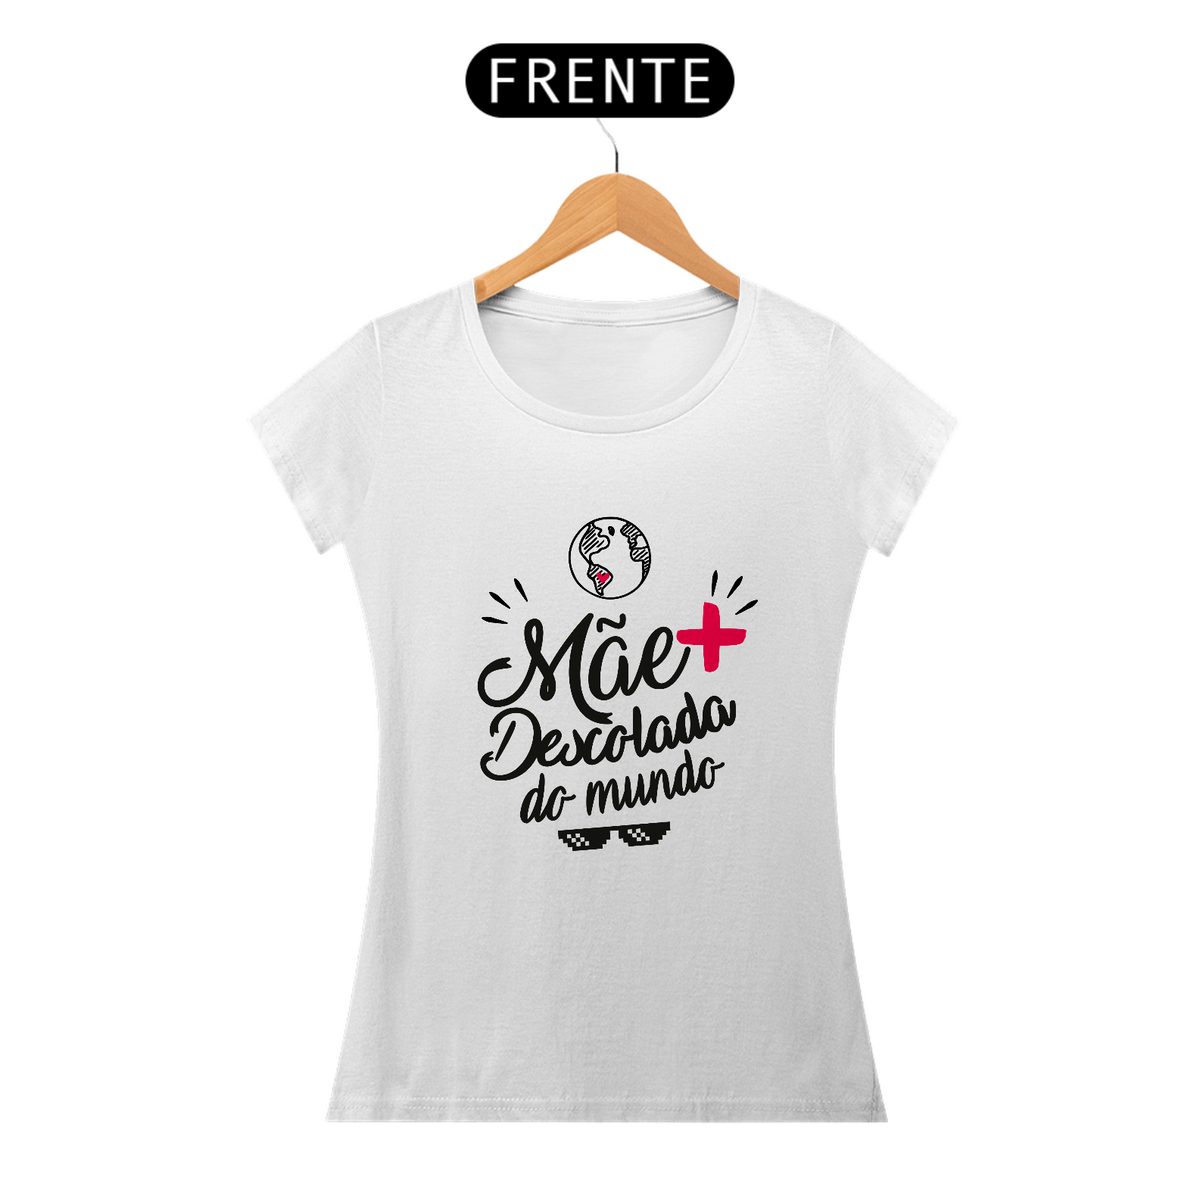 Nome do produto: Camiseta Feminina - Mãe+ Descolada do mundo